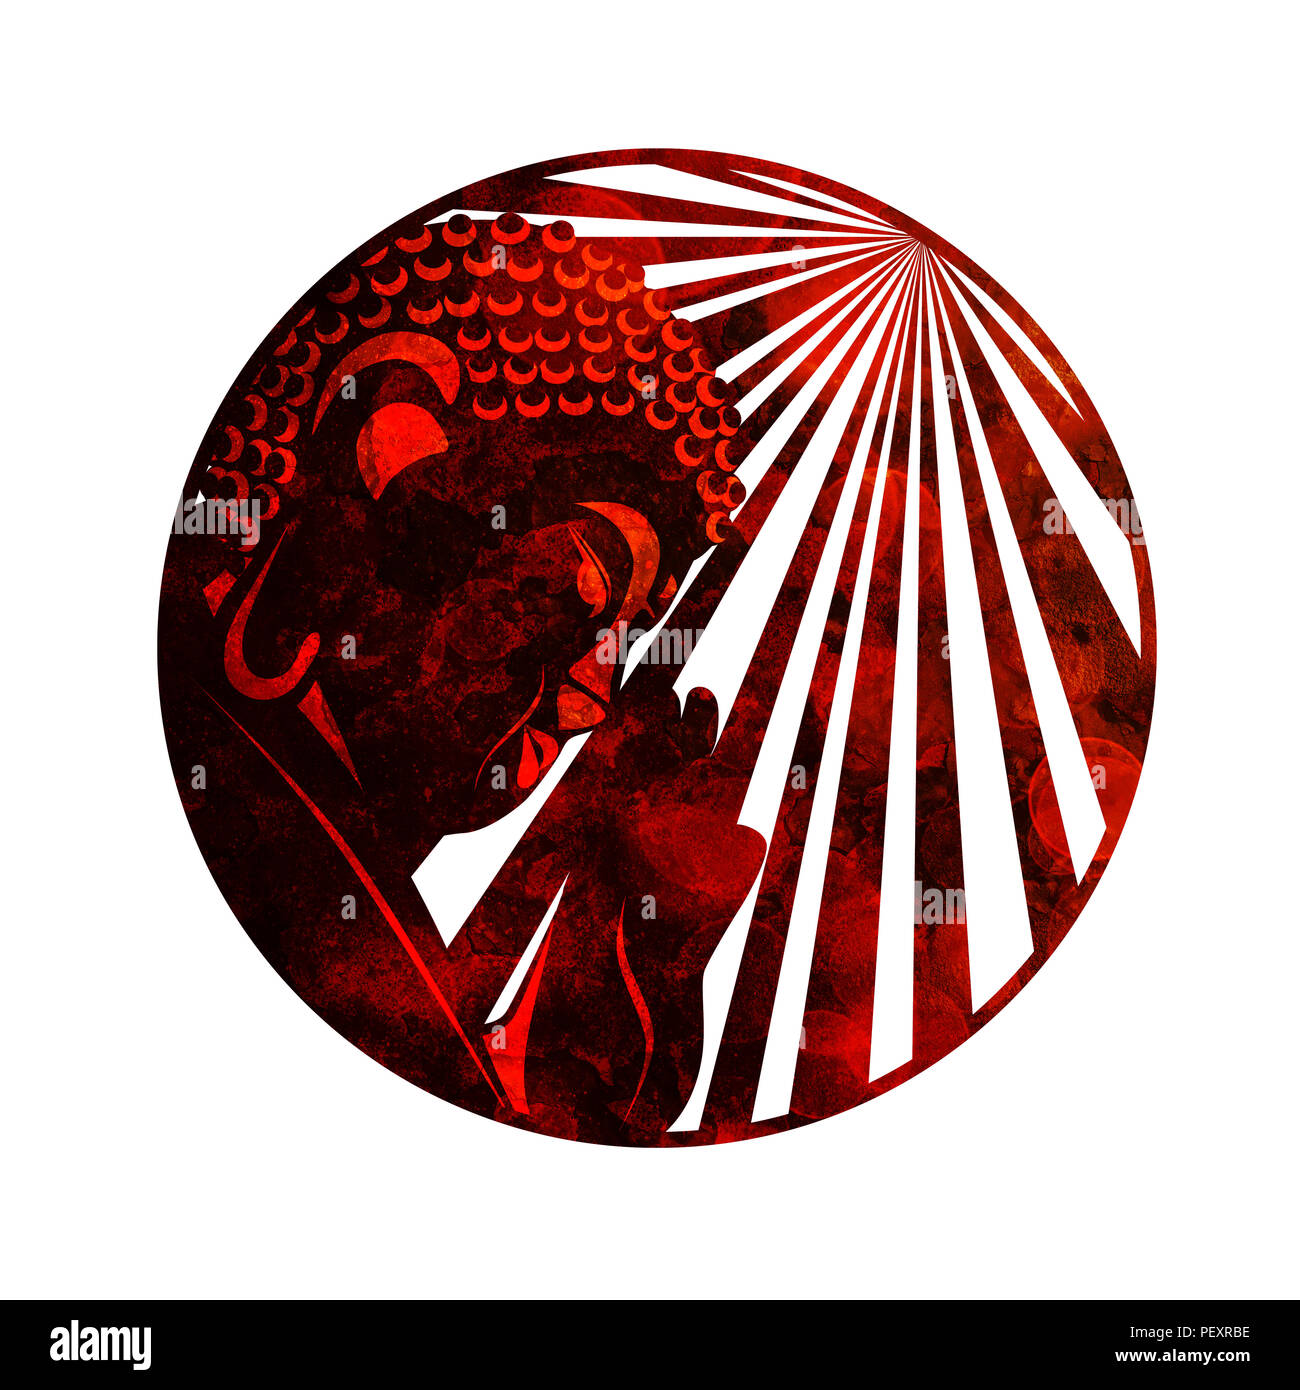 Buda, planteadas con la palma de la mano y los rayos de luz solar en el borde del círculo rojo textura rústica grunge ilustración Foto de stock